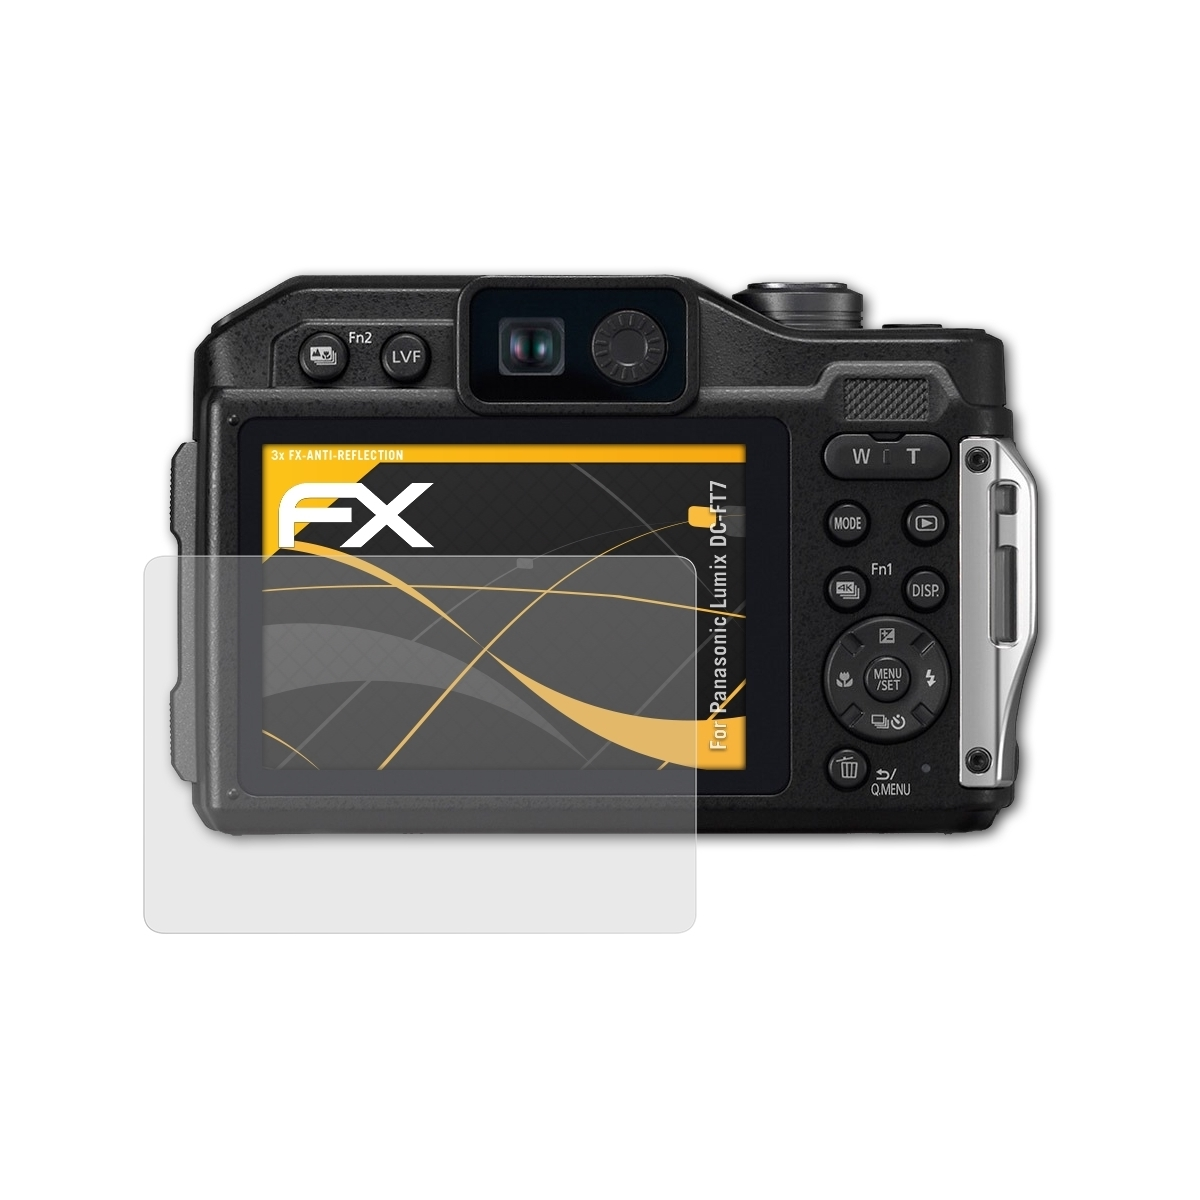 3x DC-FT7) Lumix Panasonic FX-Antireflex ATFOLIX Displayschutz(für